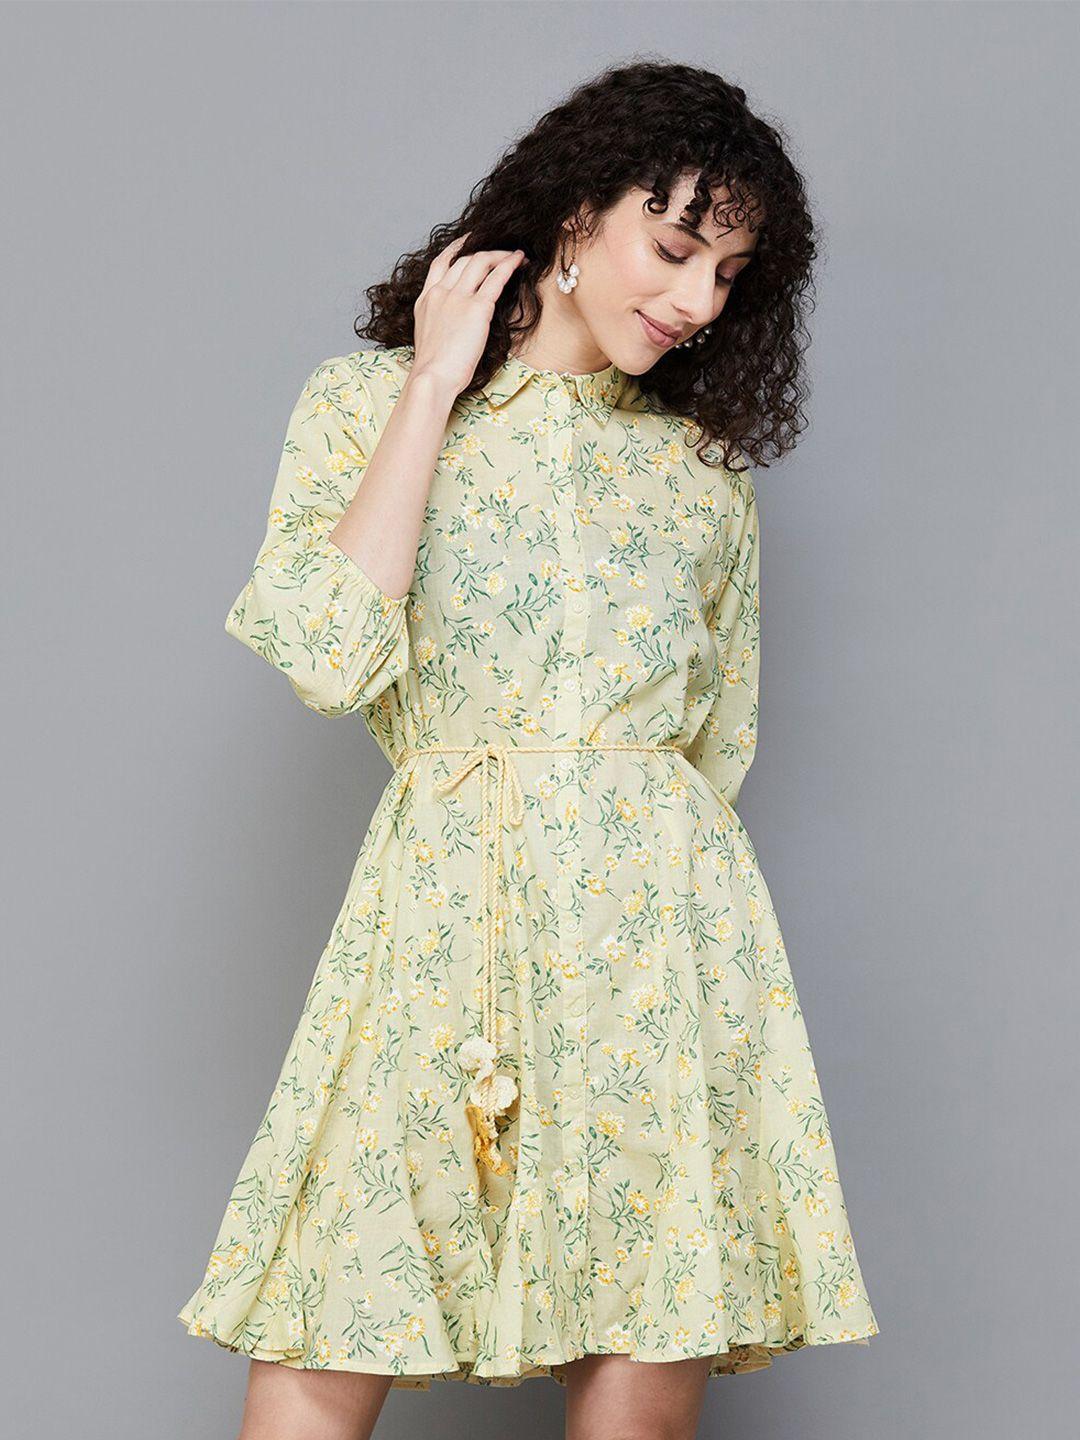 colour me by melange floral print shirt dress